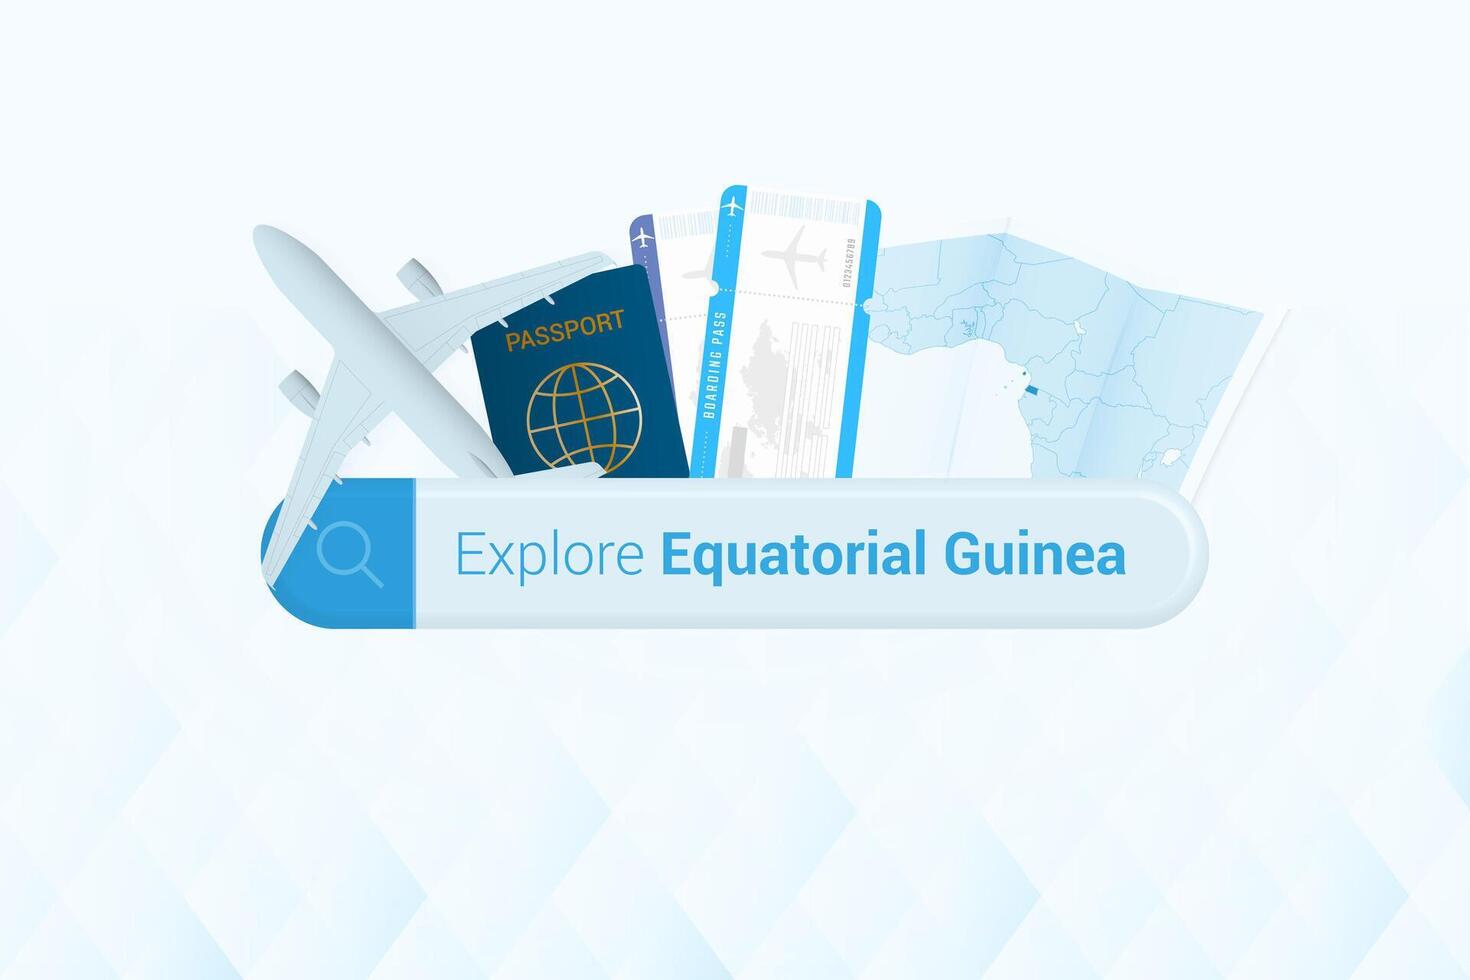 suchen Tickets zu äquatorial Guinea oder Reise Ziel im äquatorial Guinea. suchen Bar mit Flugzeug, Reisepass, Einsteigen passieren, Tickets und Karte. vektor